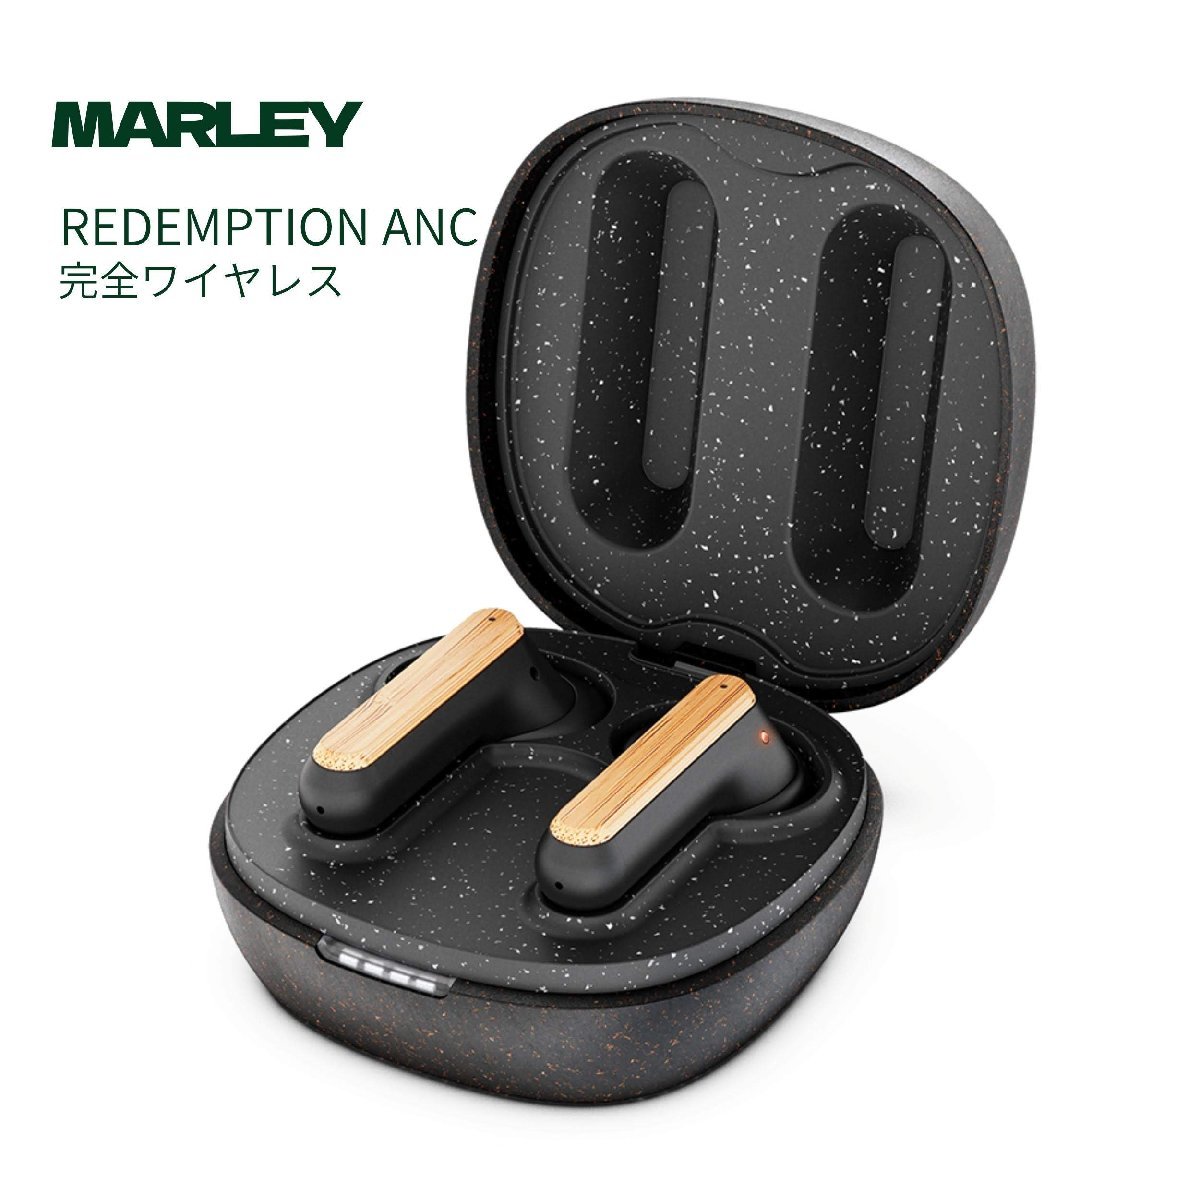 Marley ノイズキャンセリング 完全 ワイヤレス イヤホン REDEMPTION ANC 通話対応/ AAC aptX対応/シグネチャー/ブラック